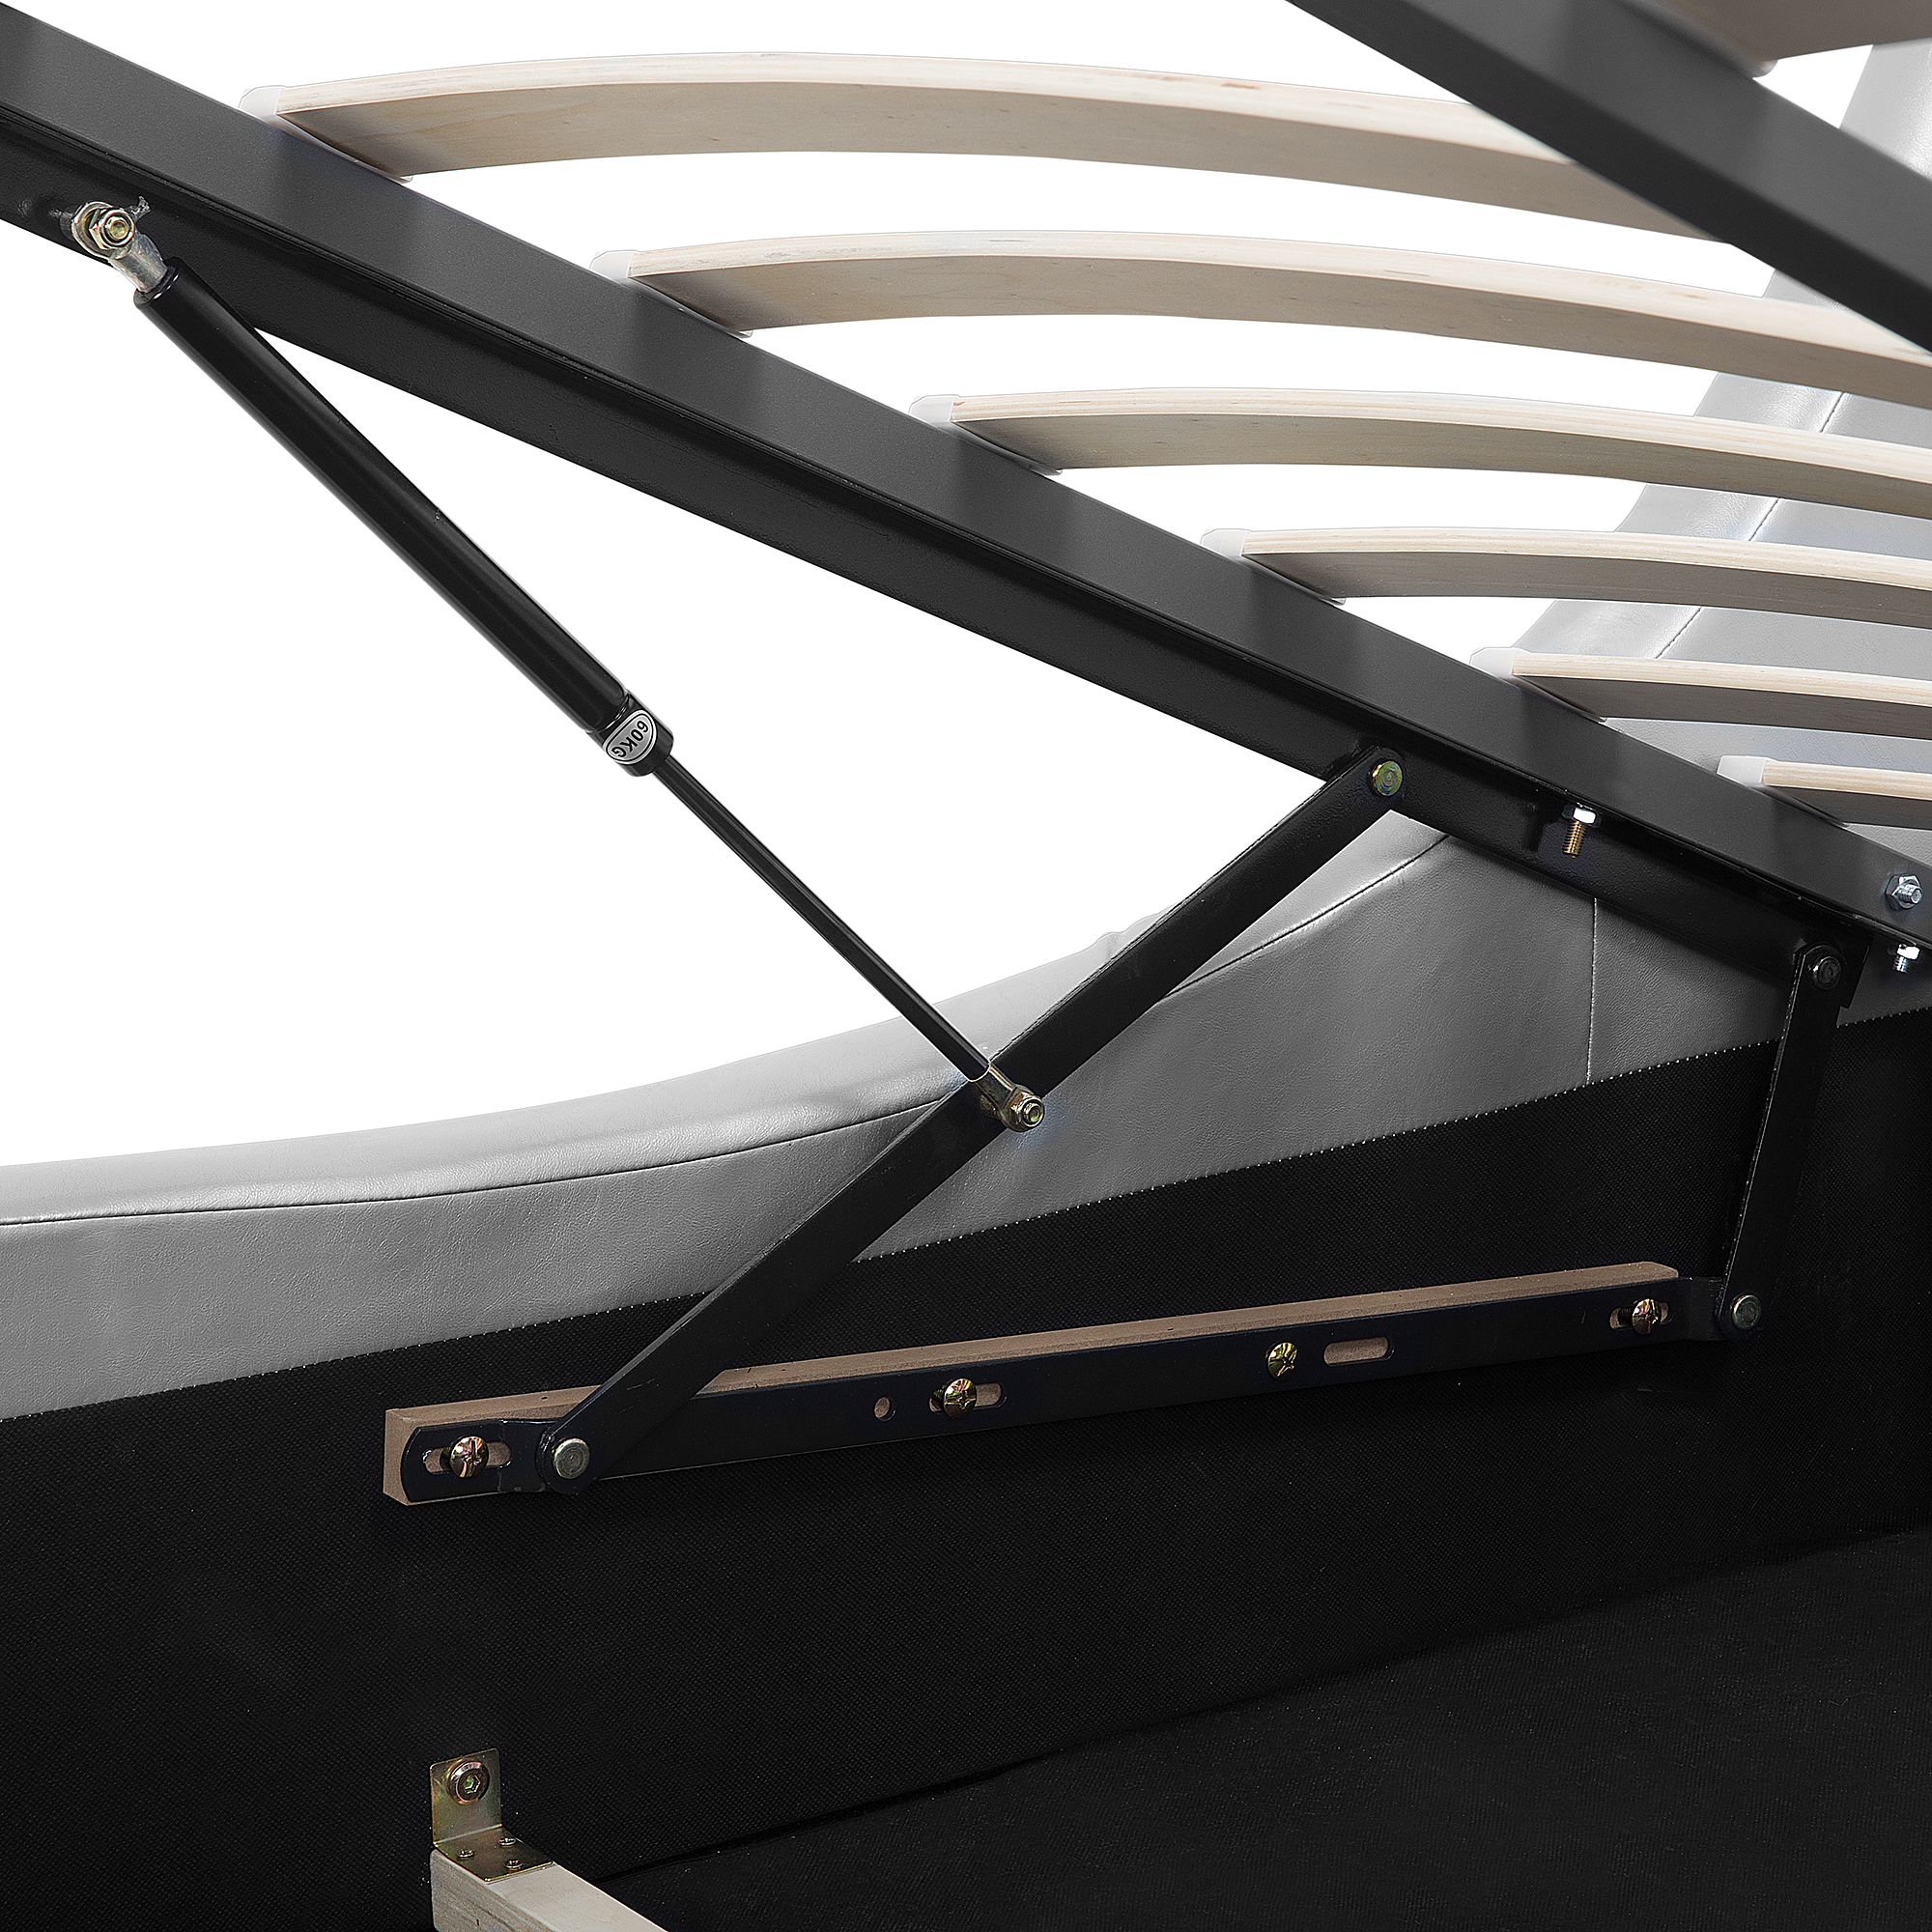 Beliani AVIGNON - Bed met opbergruimte - Zilver - 160 x 200 cm - Kunstleer